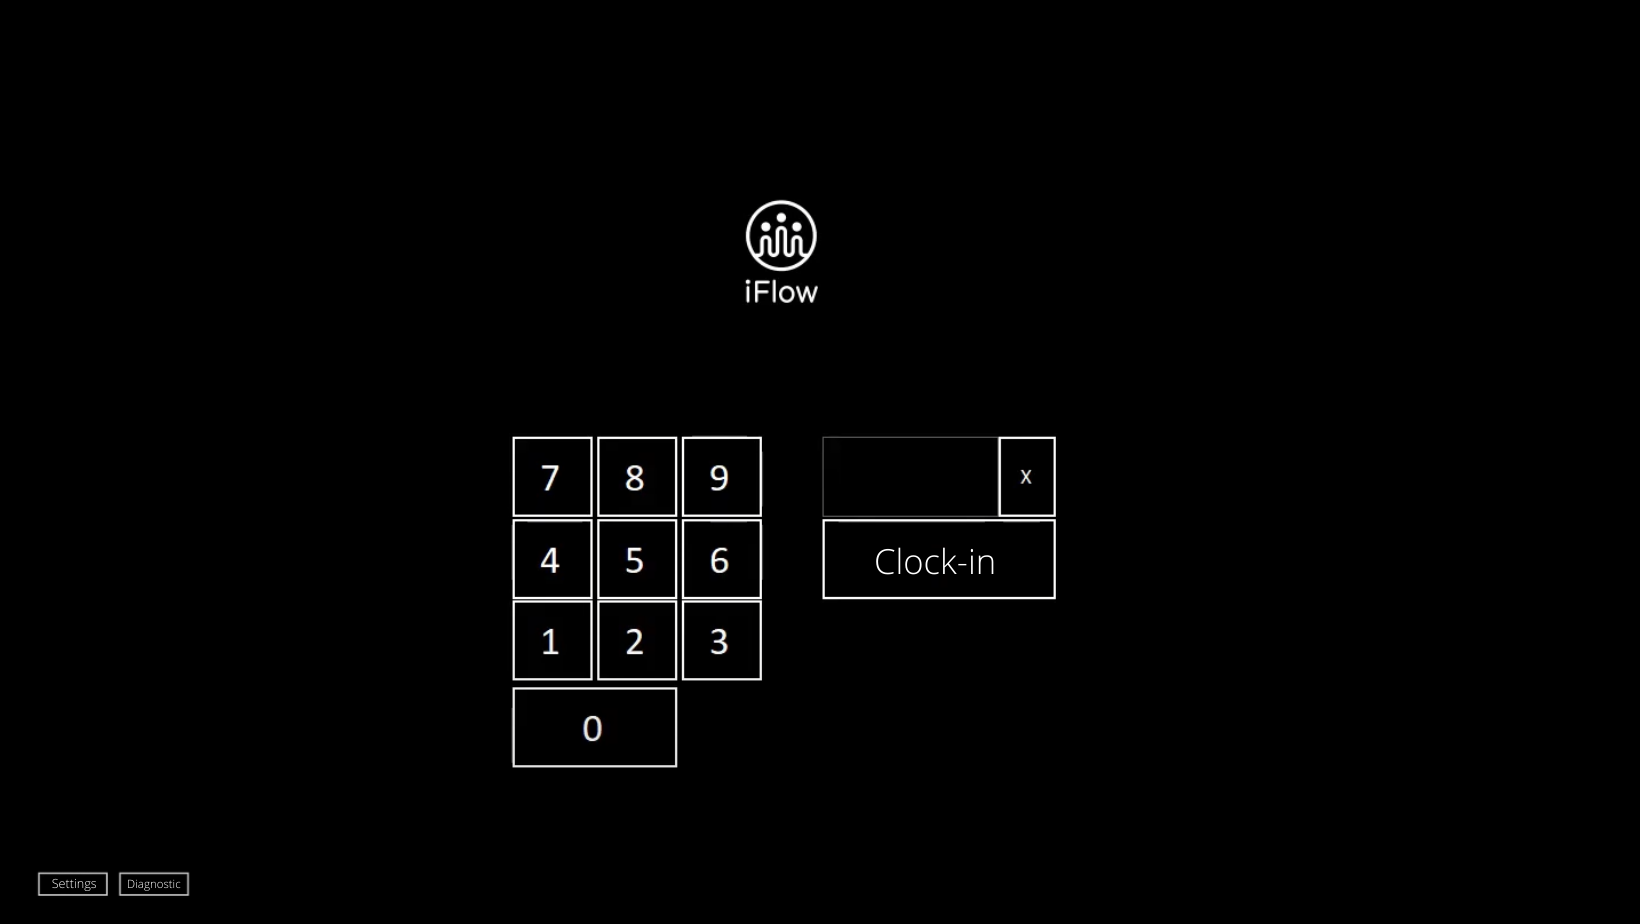 PIN code clock-in